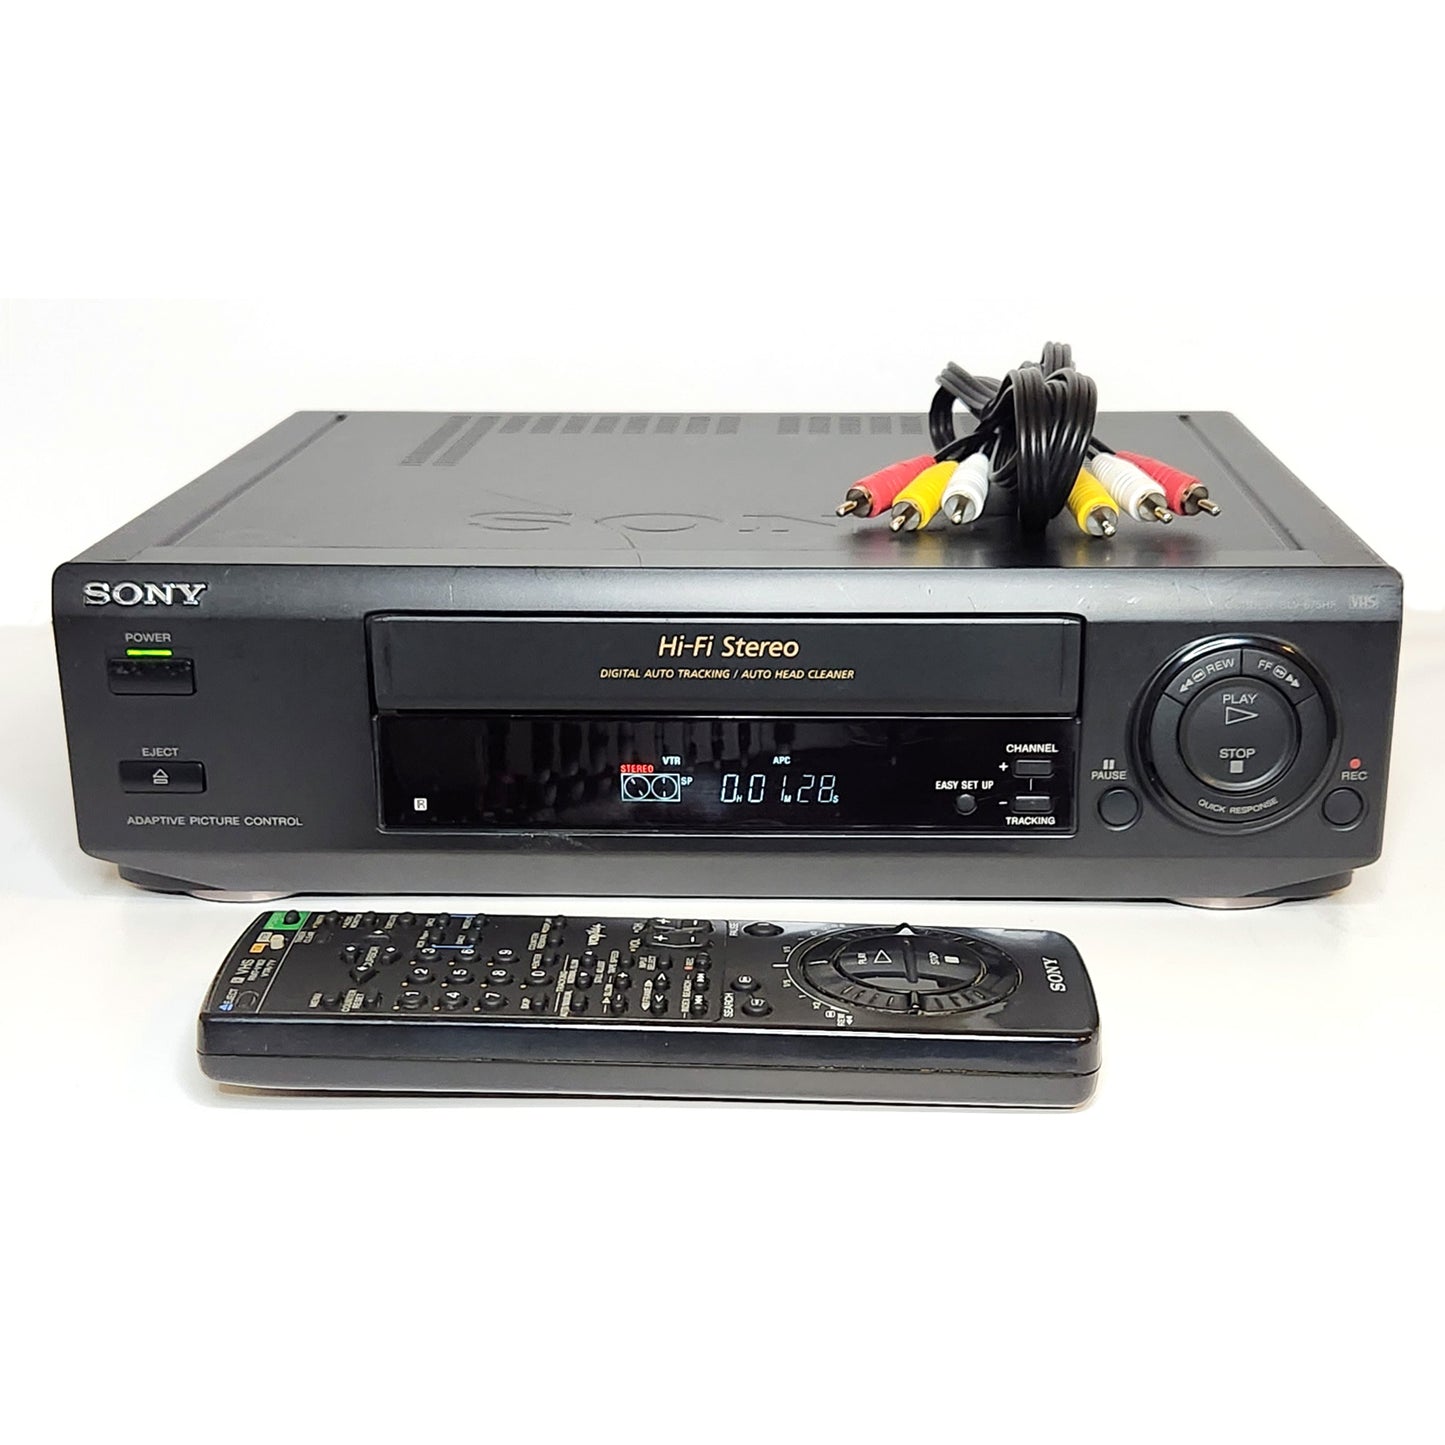 Sony SLV-675HF VCR, 4-Head Hi-Fi Stereo